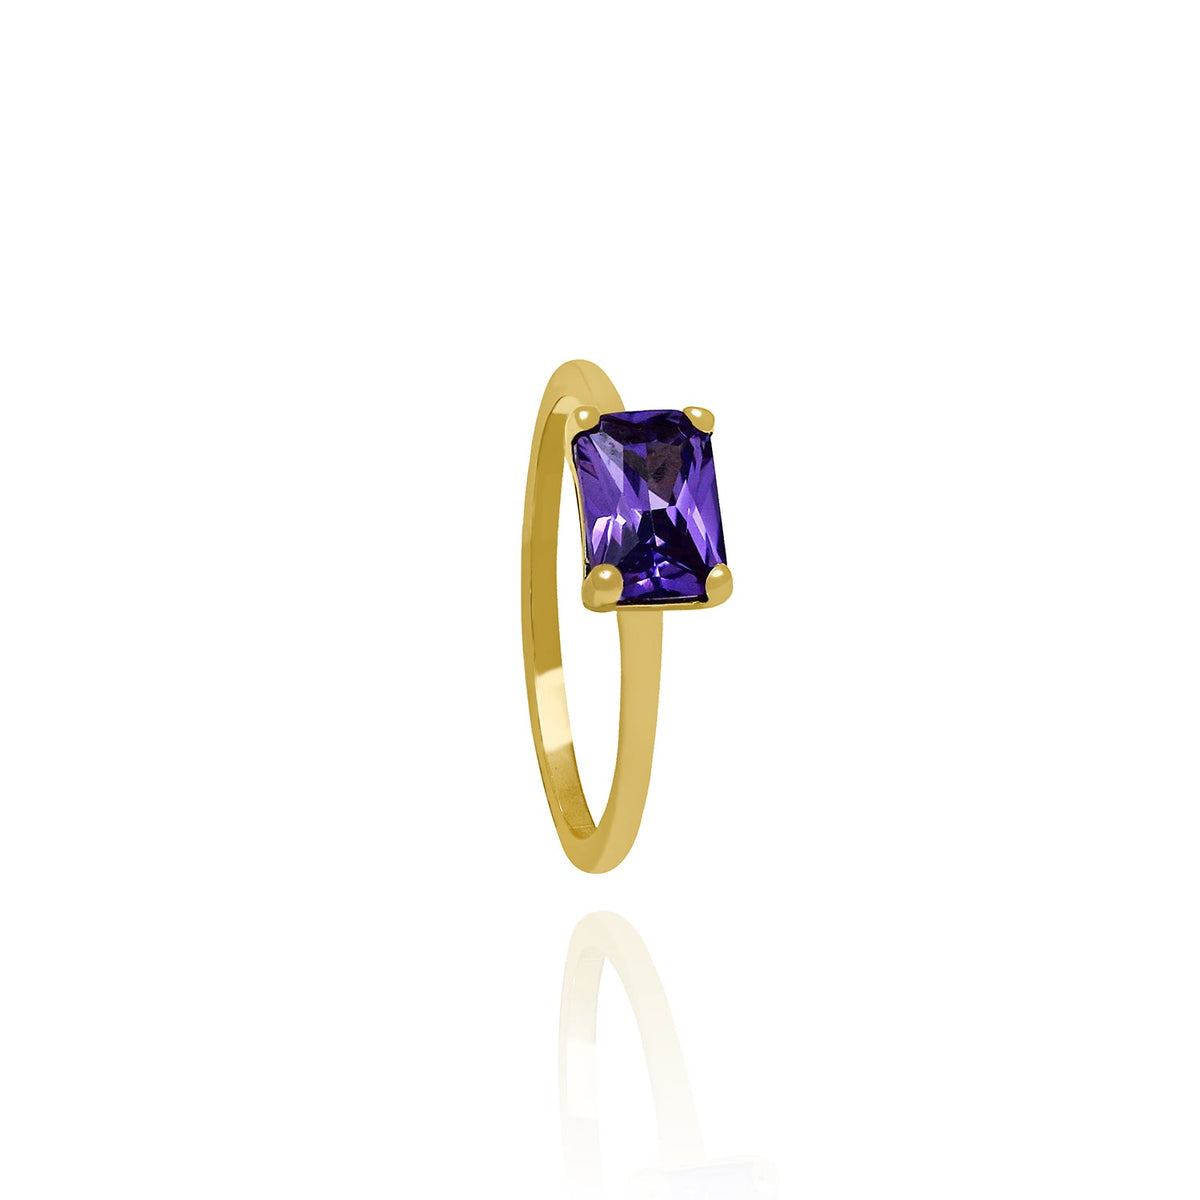 Solid Gold Amalfi Ring with Amethyst Gemstone